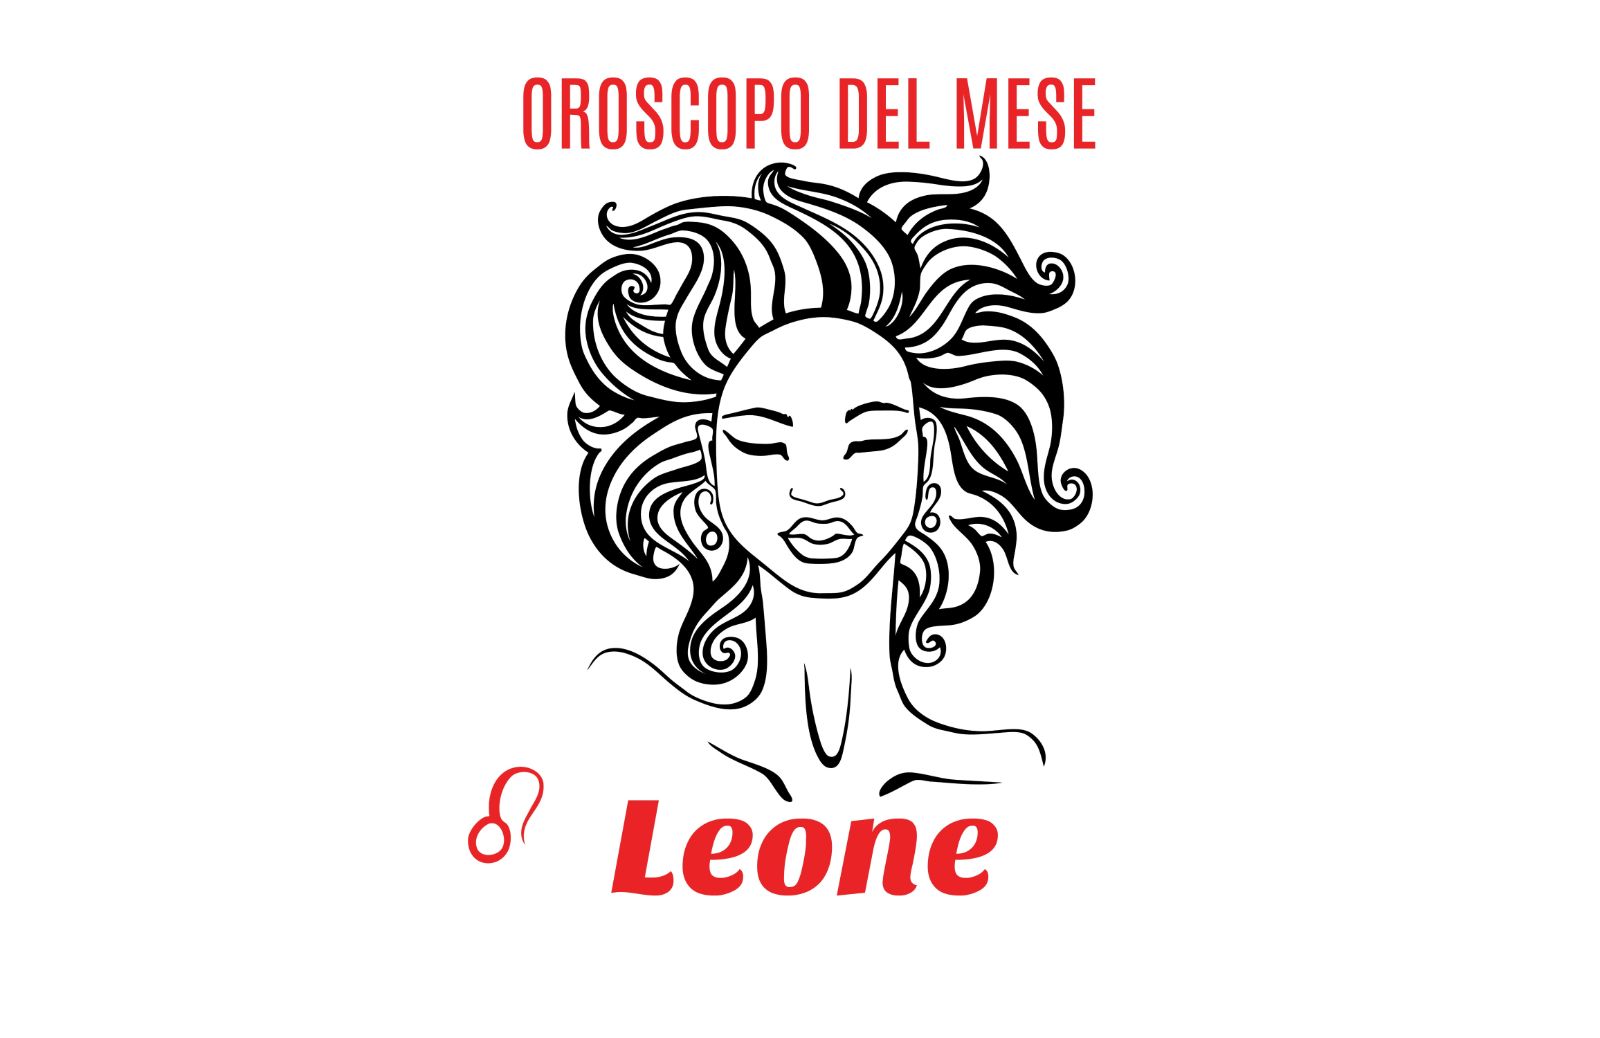 Oroscopo del mese: Leone - luglio 2018